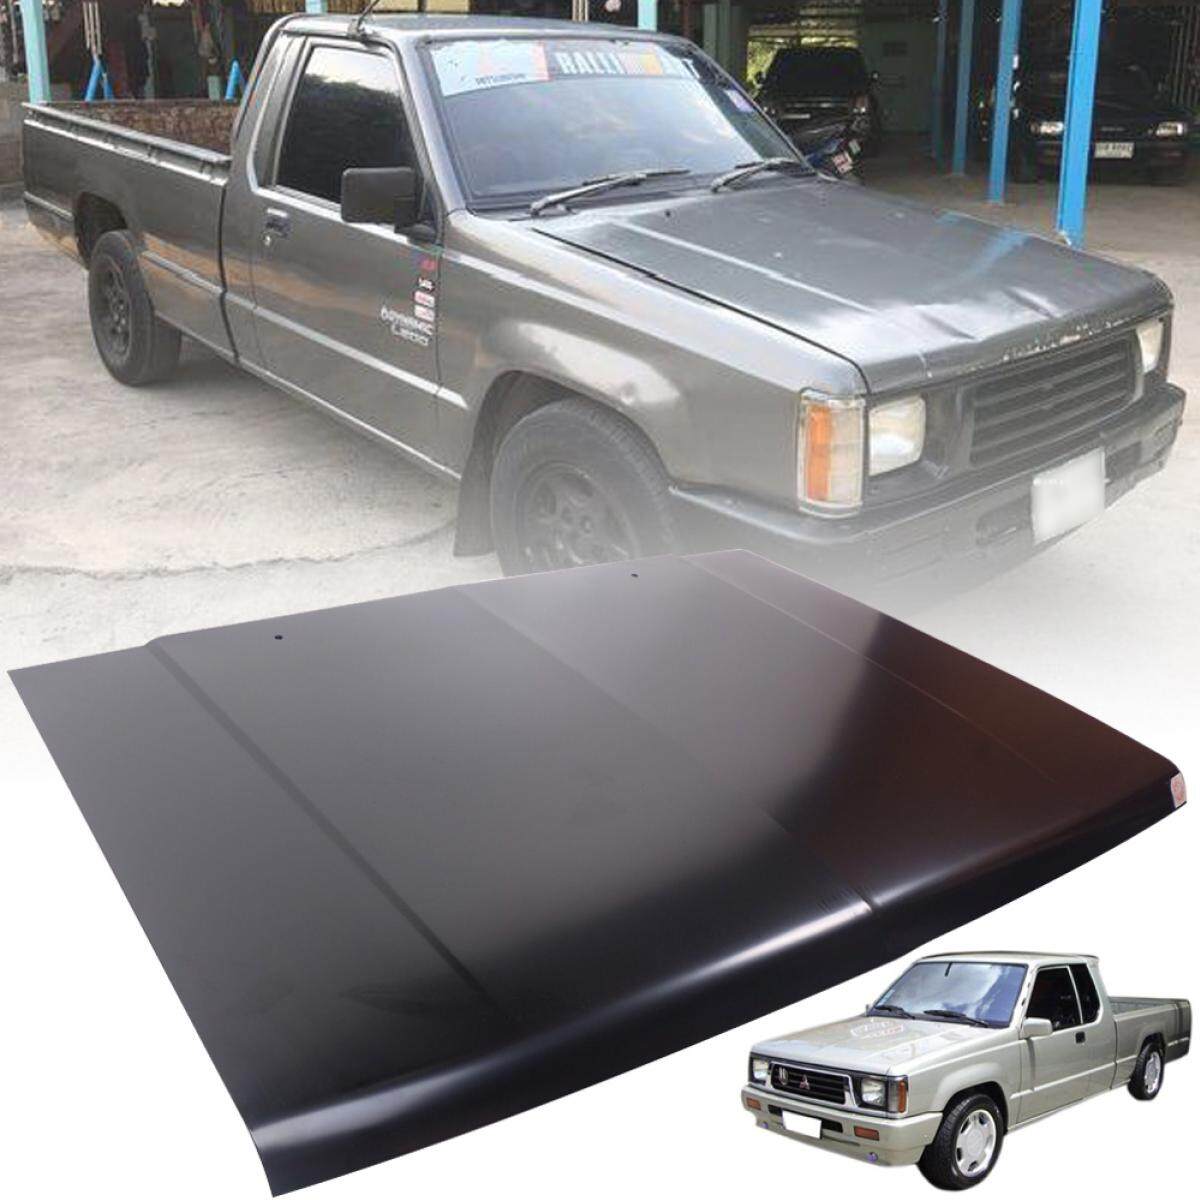 ฝากระโปรงหน้า รถยนต์ รุ่น มิตซูบิชิ ไซโคลน MITSUBISHI CYCLONE L200 ปี 1987 - 1992 สีดำด้าน 1 ชิ้น